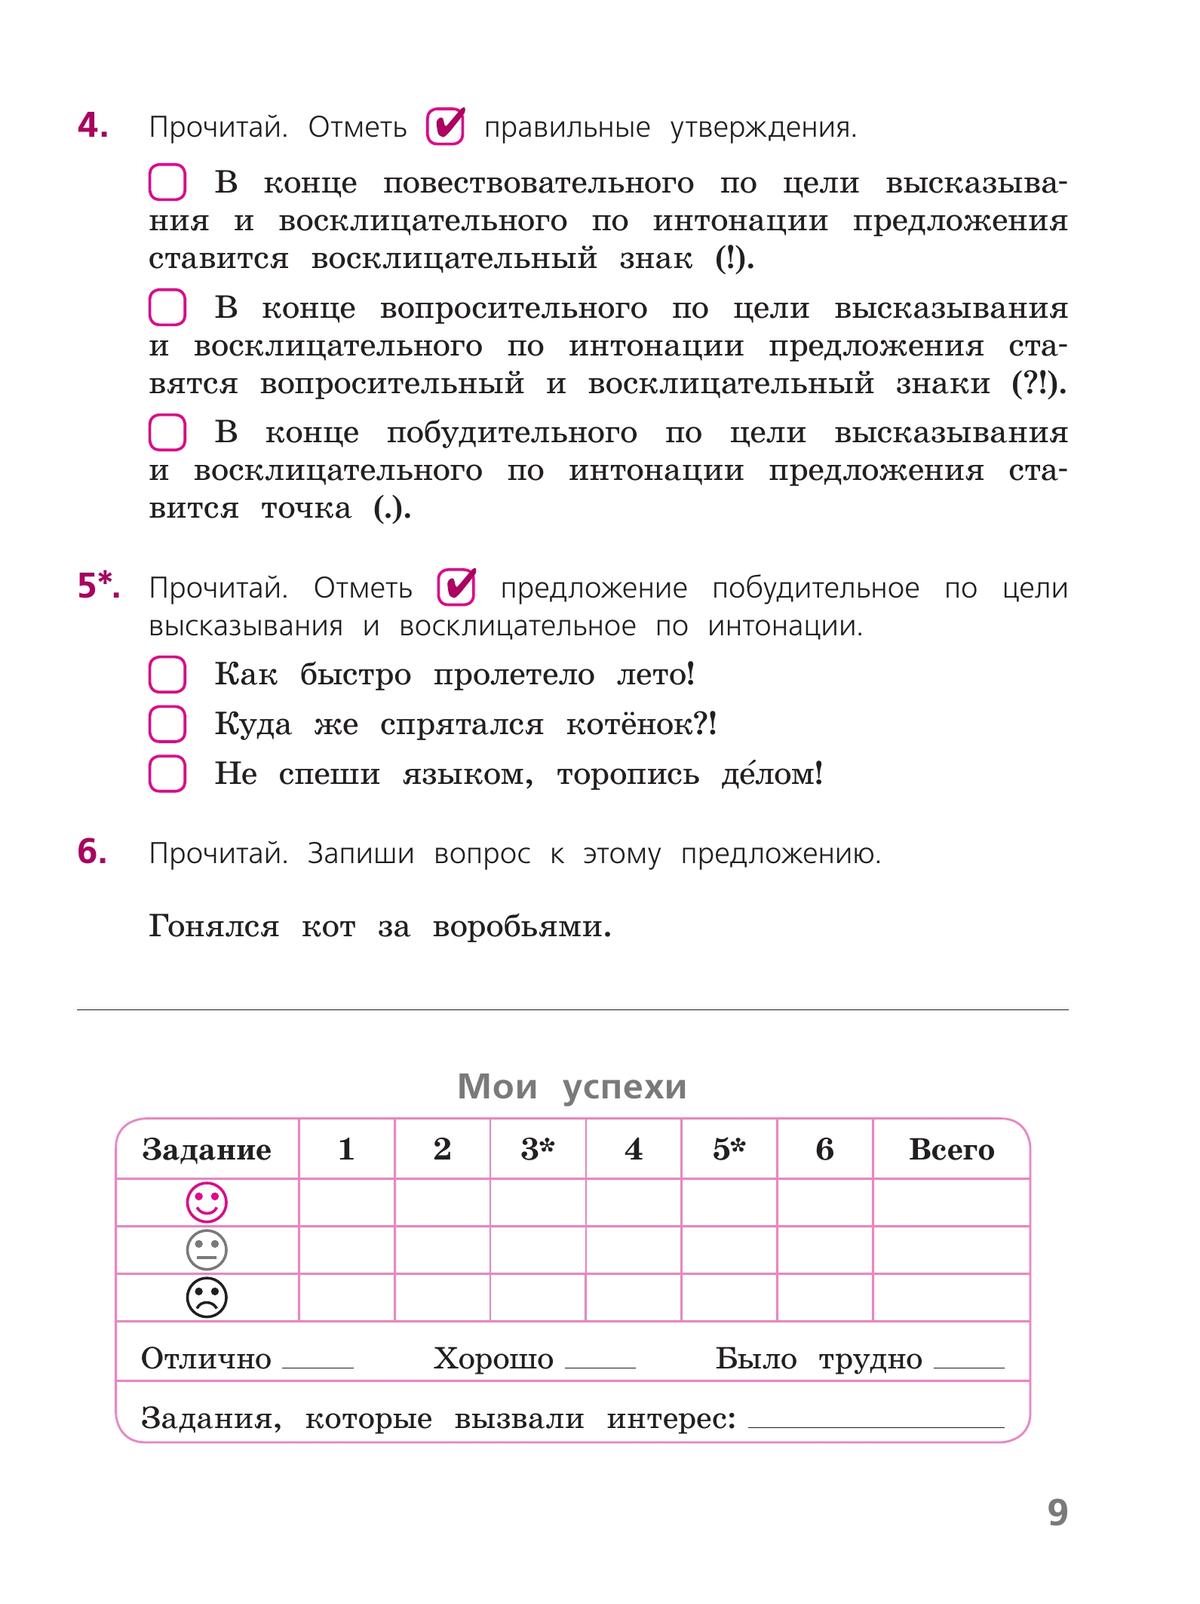 Русский язык. Тетрадь учебных достижений. 4 класс 9